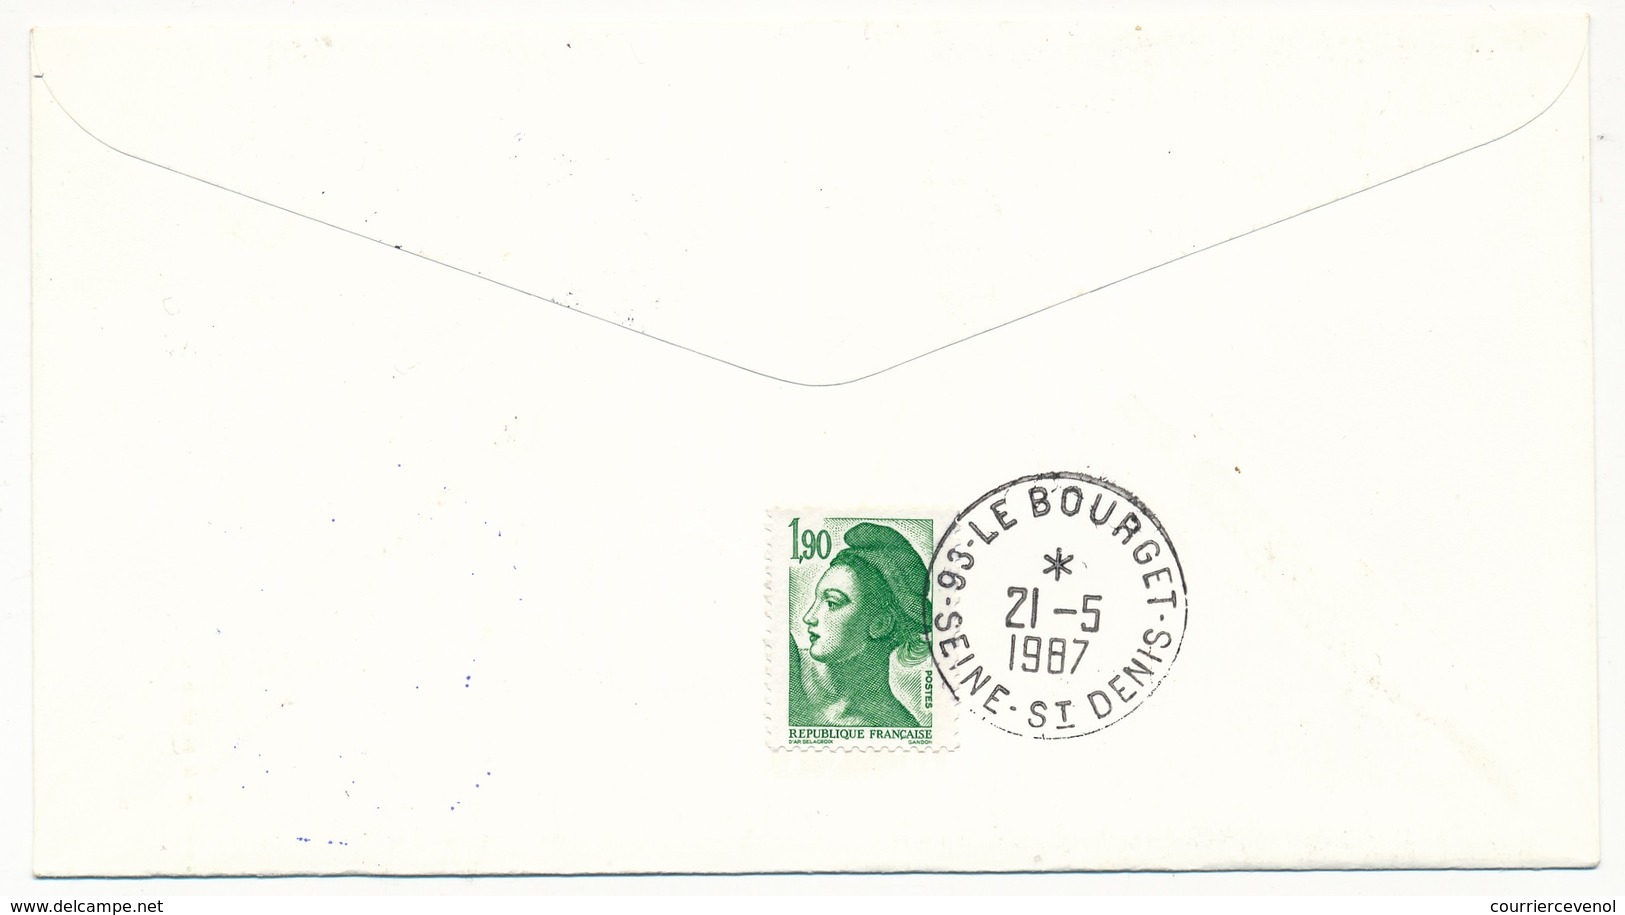 Enveloppe Commémorative -  60eme Anniversaire Traversée De Lindberg - VOL SPECIAL CONCORDE 21/05/1987 - Lettres & Documents